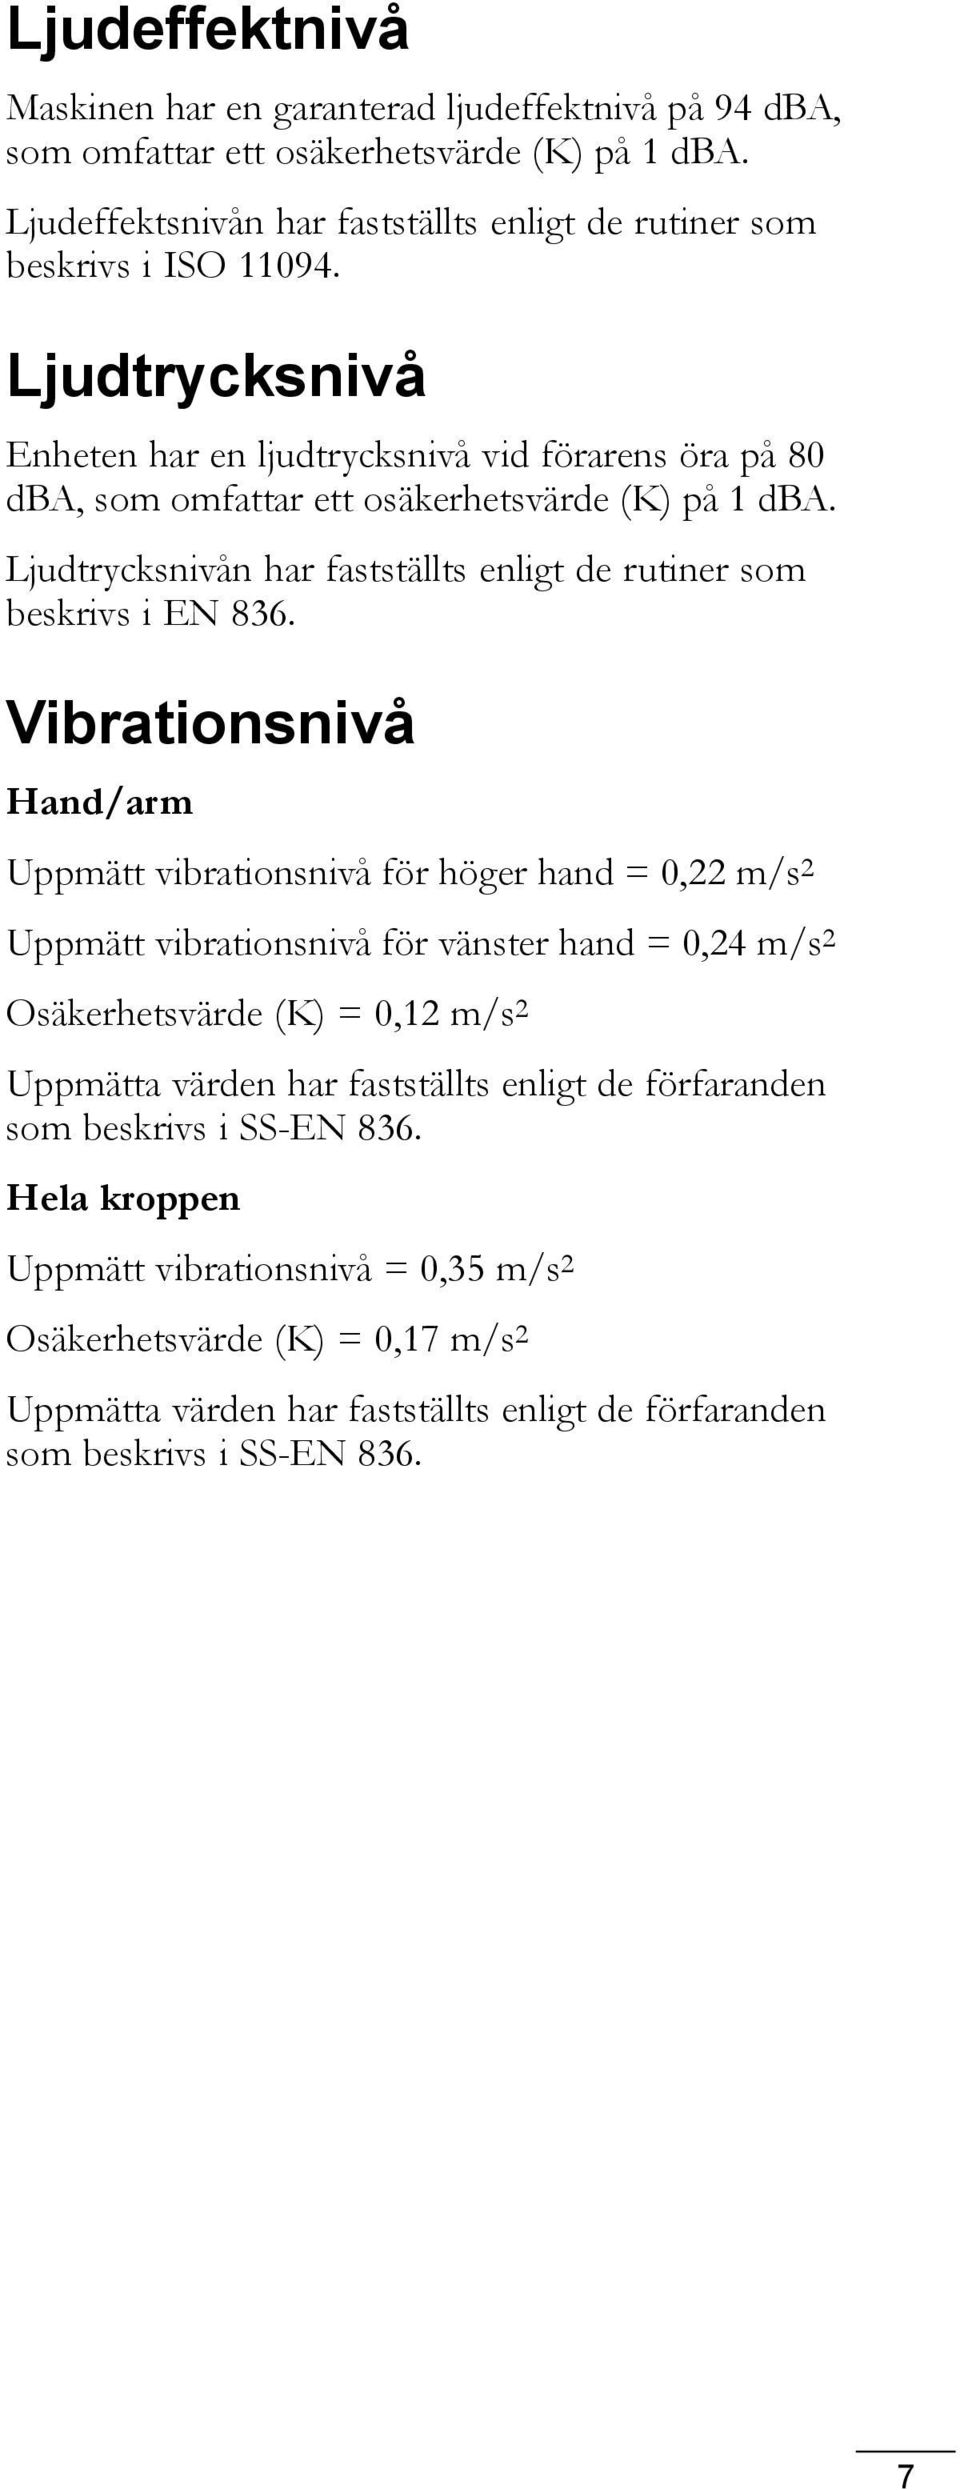 Vibrationsnivå Hand/arm Uppmätt vibrationsnivå för höger hand = 0,22 m/s 2 Uppmätt vibrationsnivå för vänster hand = 0,24 m/s 2 Osäkerhetsvärde (K) = 0,2 m/s 2 Uppmätta värden har fastställts